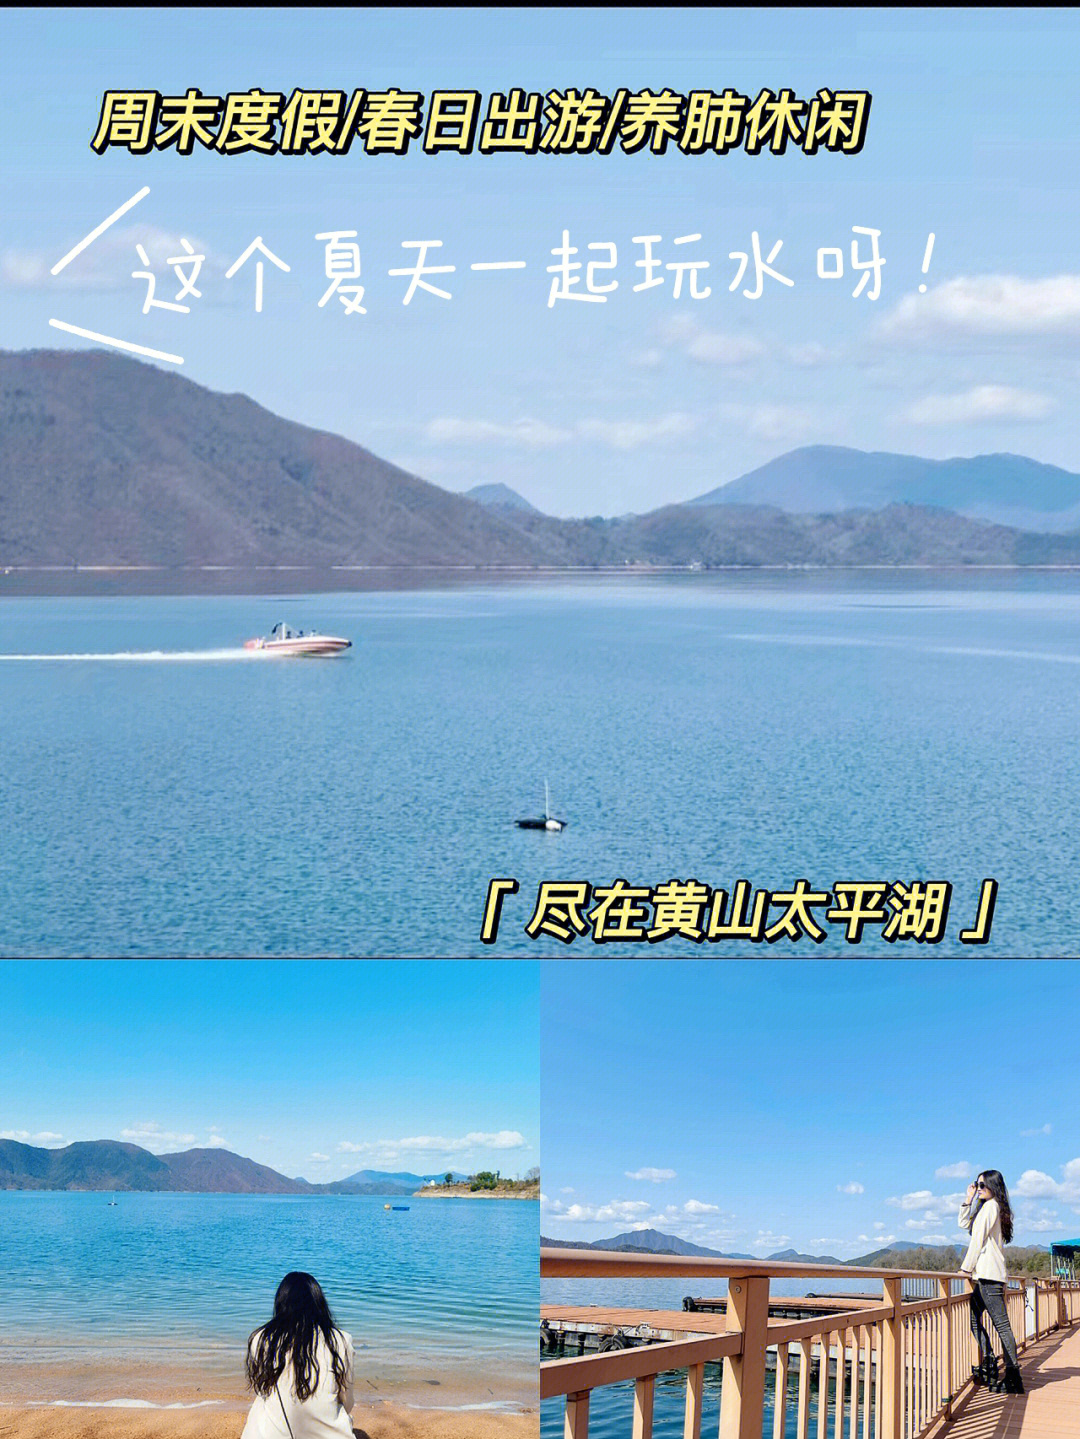 黄山太平湖栈道介绍图片